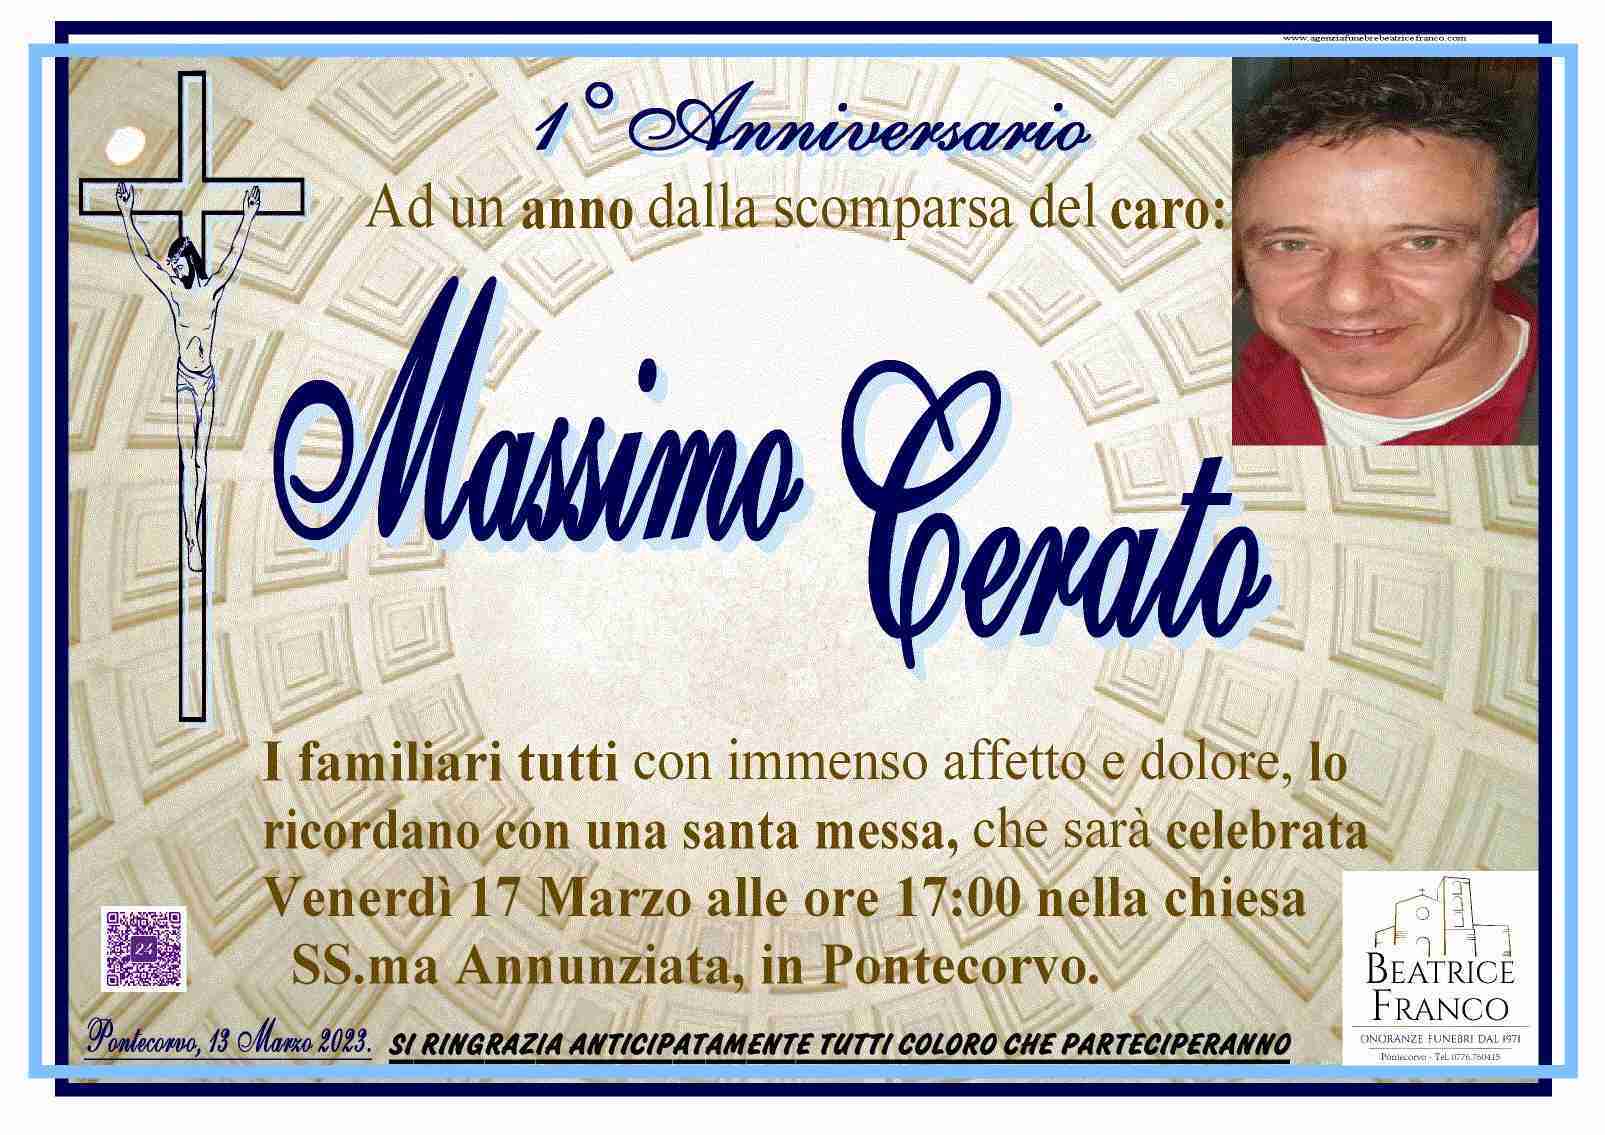 Massimo Cerato